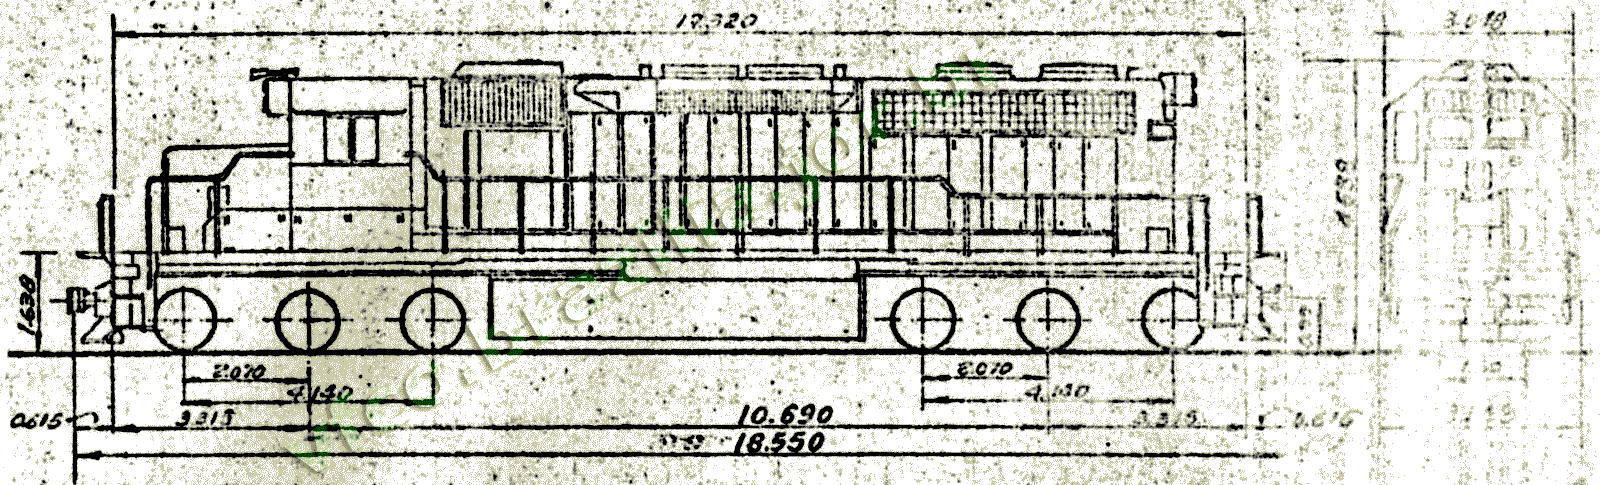 Desenho e medidas da Locomotiva SD-38